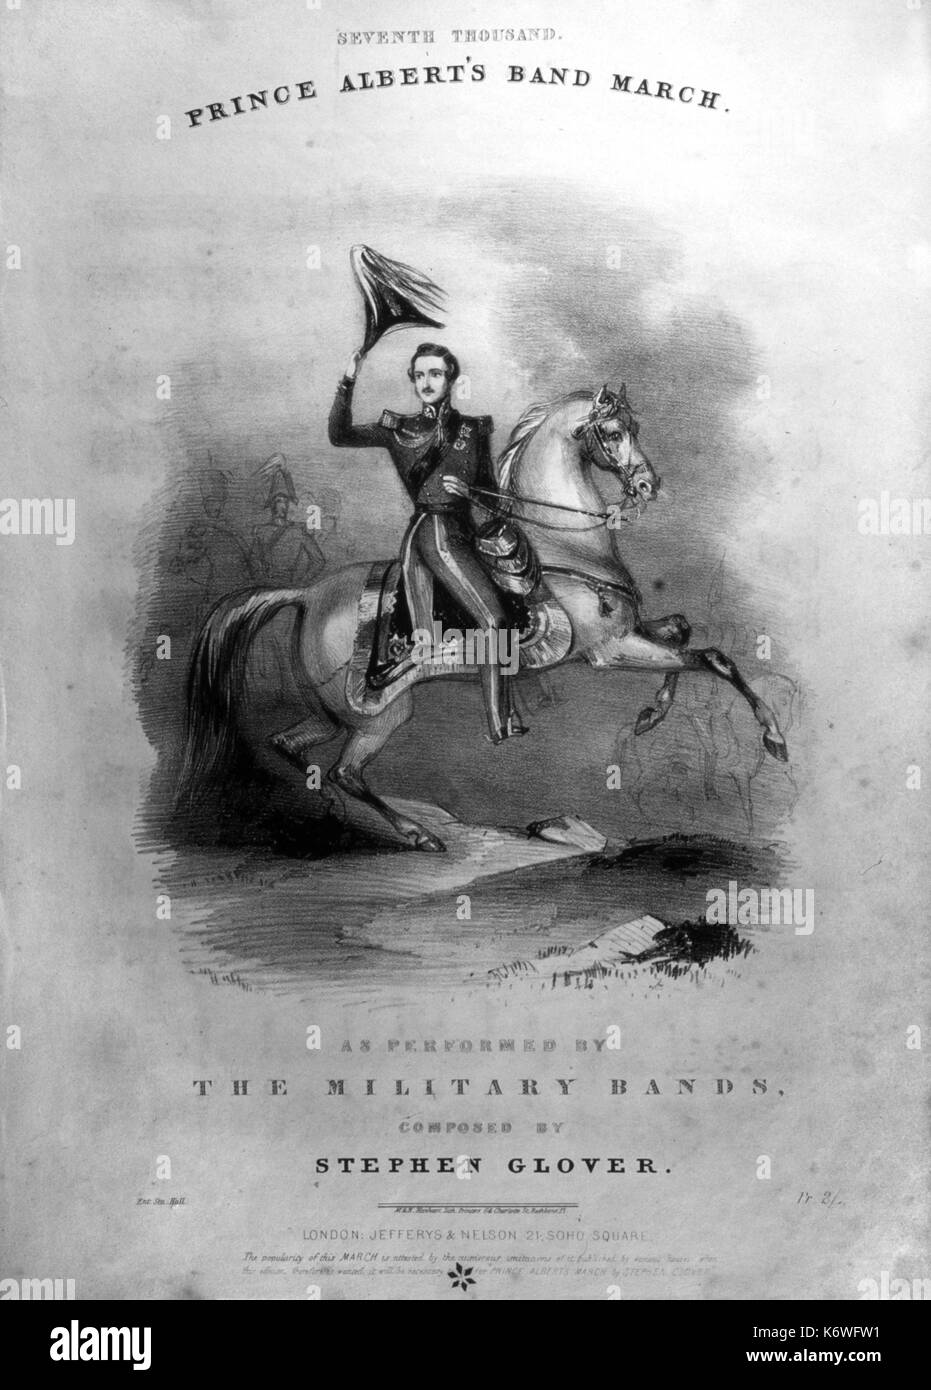 VICTORIA & ALBERT - Prince Albert's Band Marzo cubierta puntuación mostrando Prince Albert montando a caballo. Música por Stephen Glover, c1840 Foto de stock